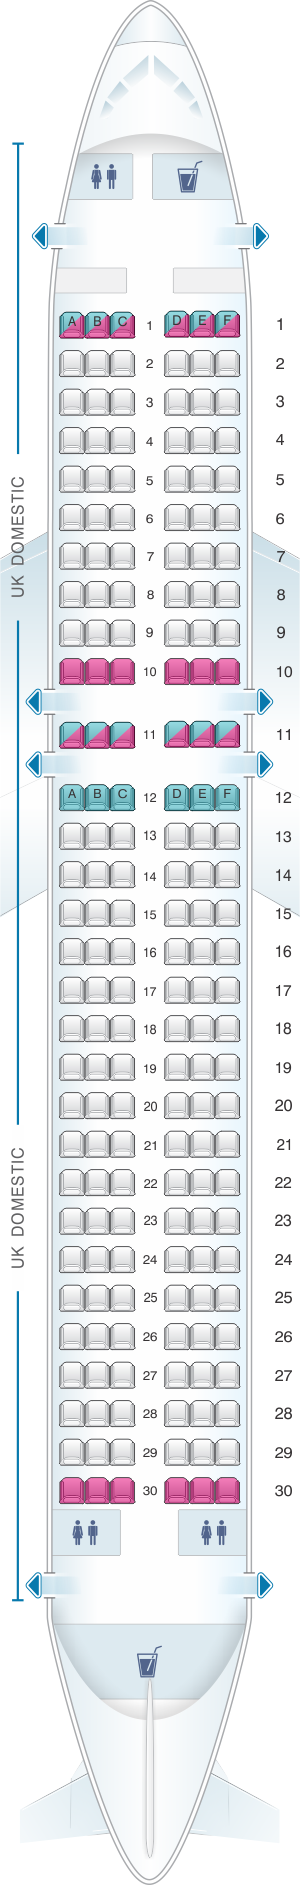 seat assignments on british airways